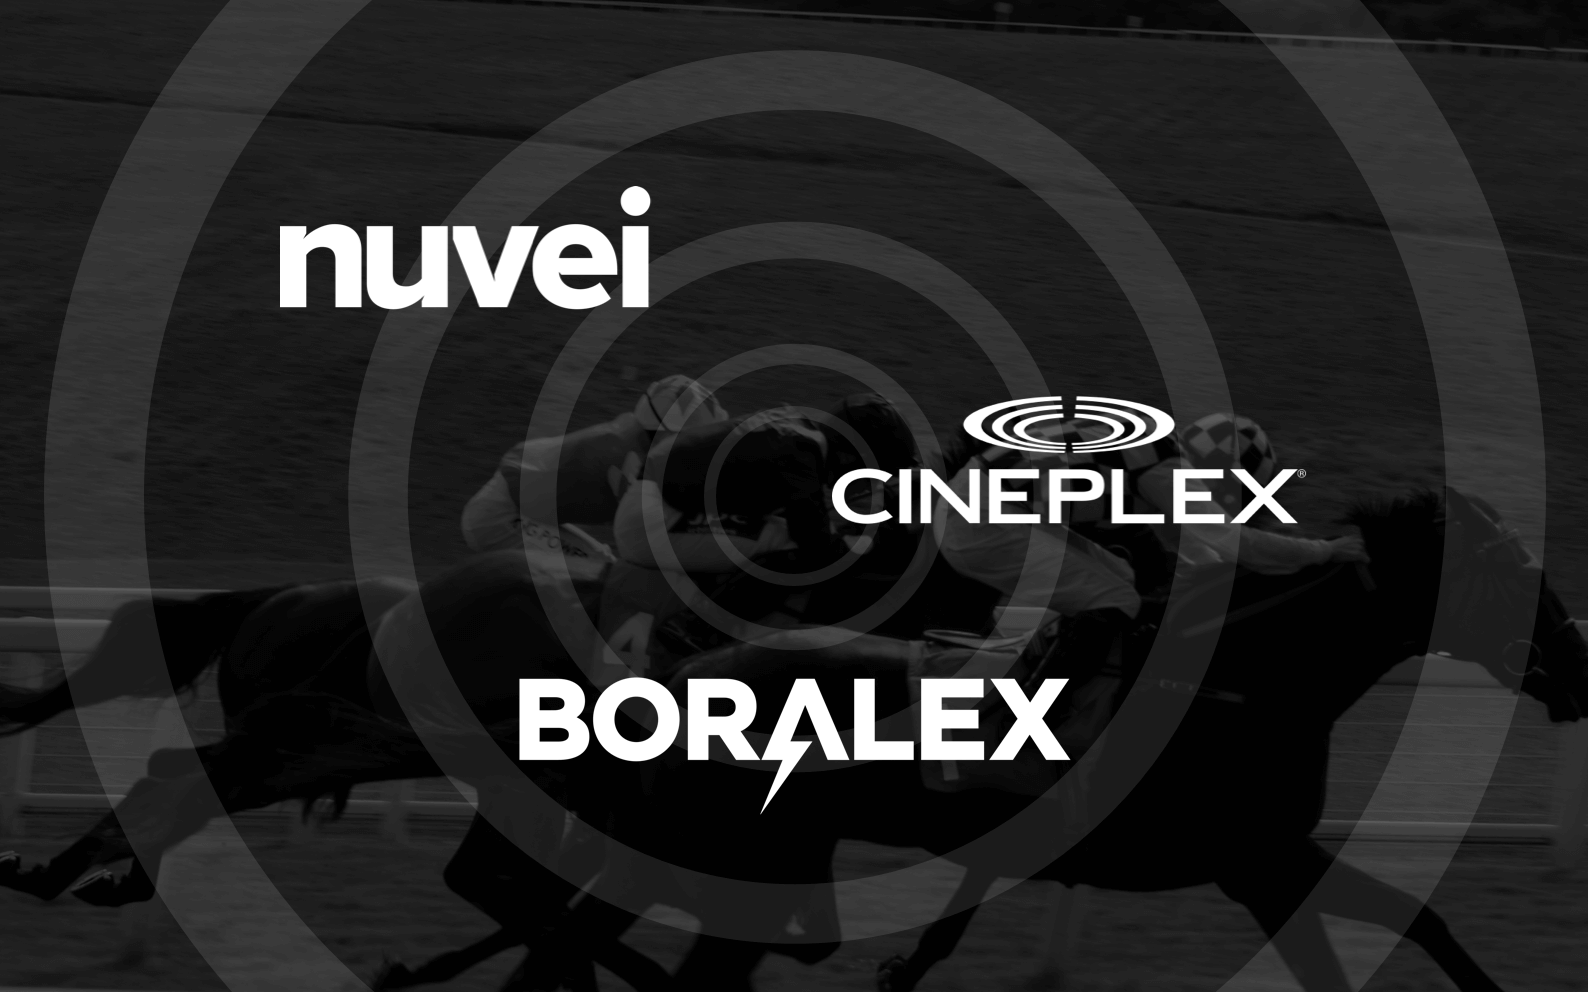 Dark horses: Nuvei, Cineplex, Boralex